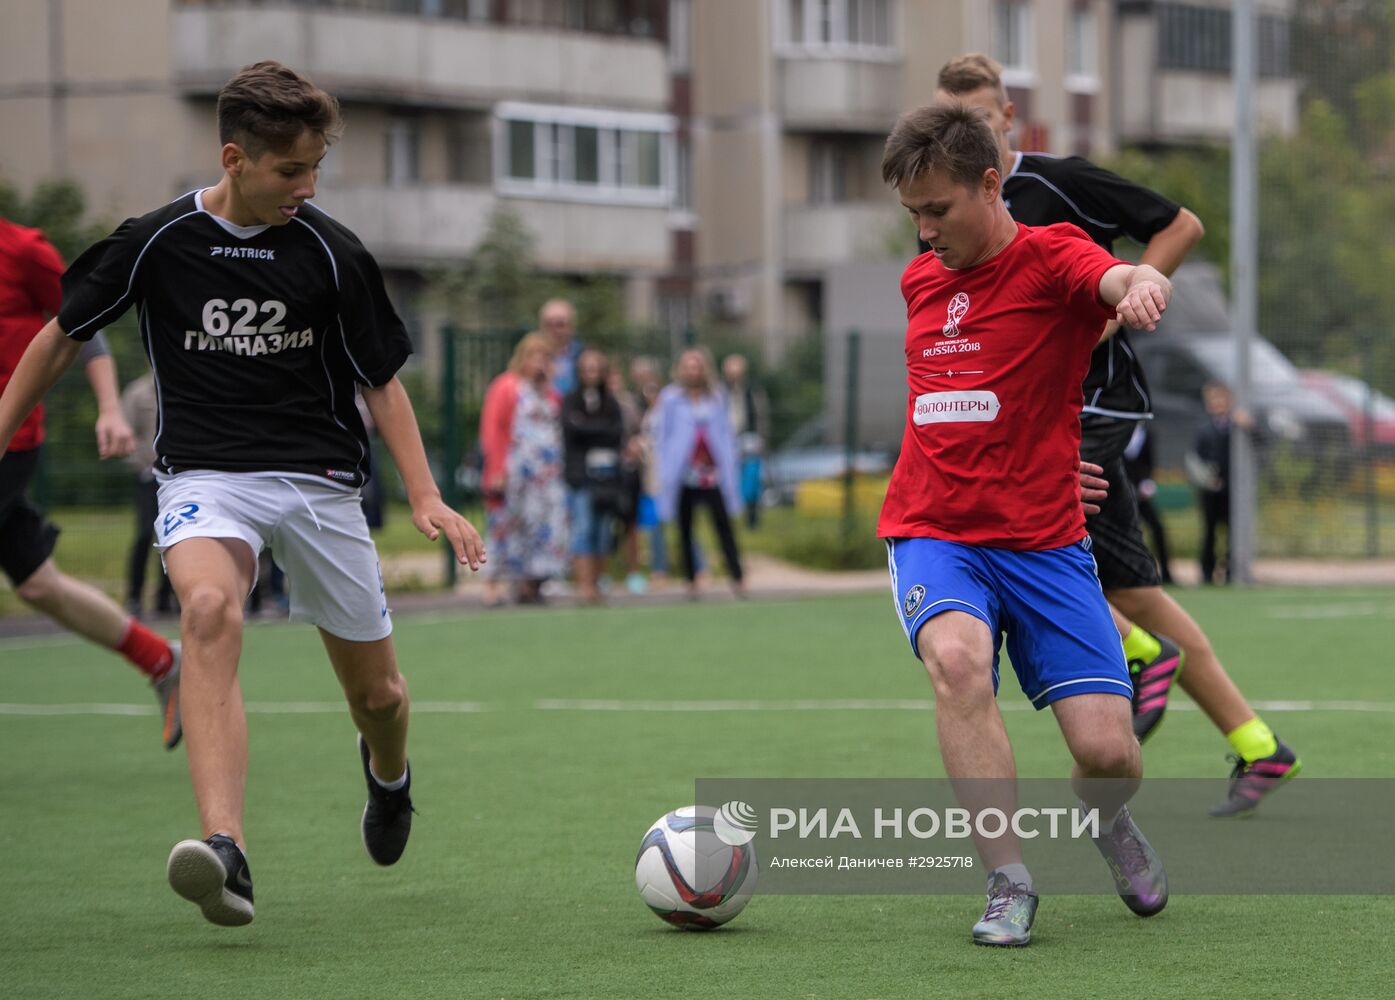 "Футбольный урок" прошел в Санкт-Петербурге